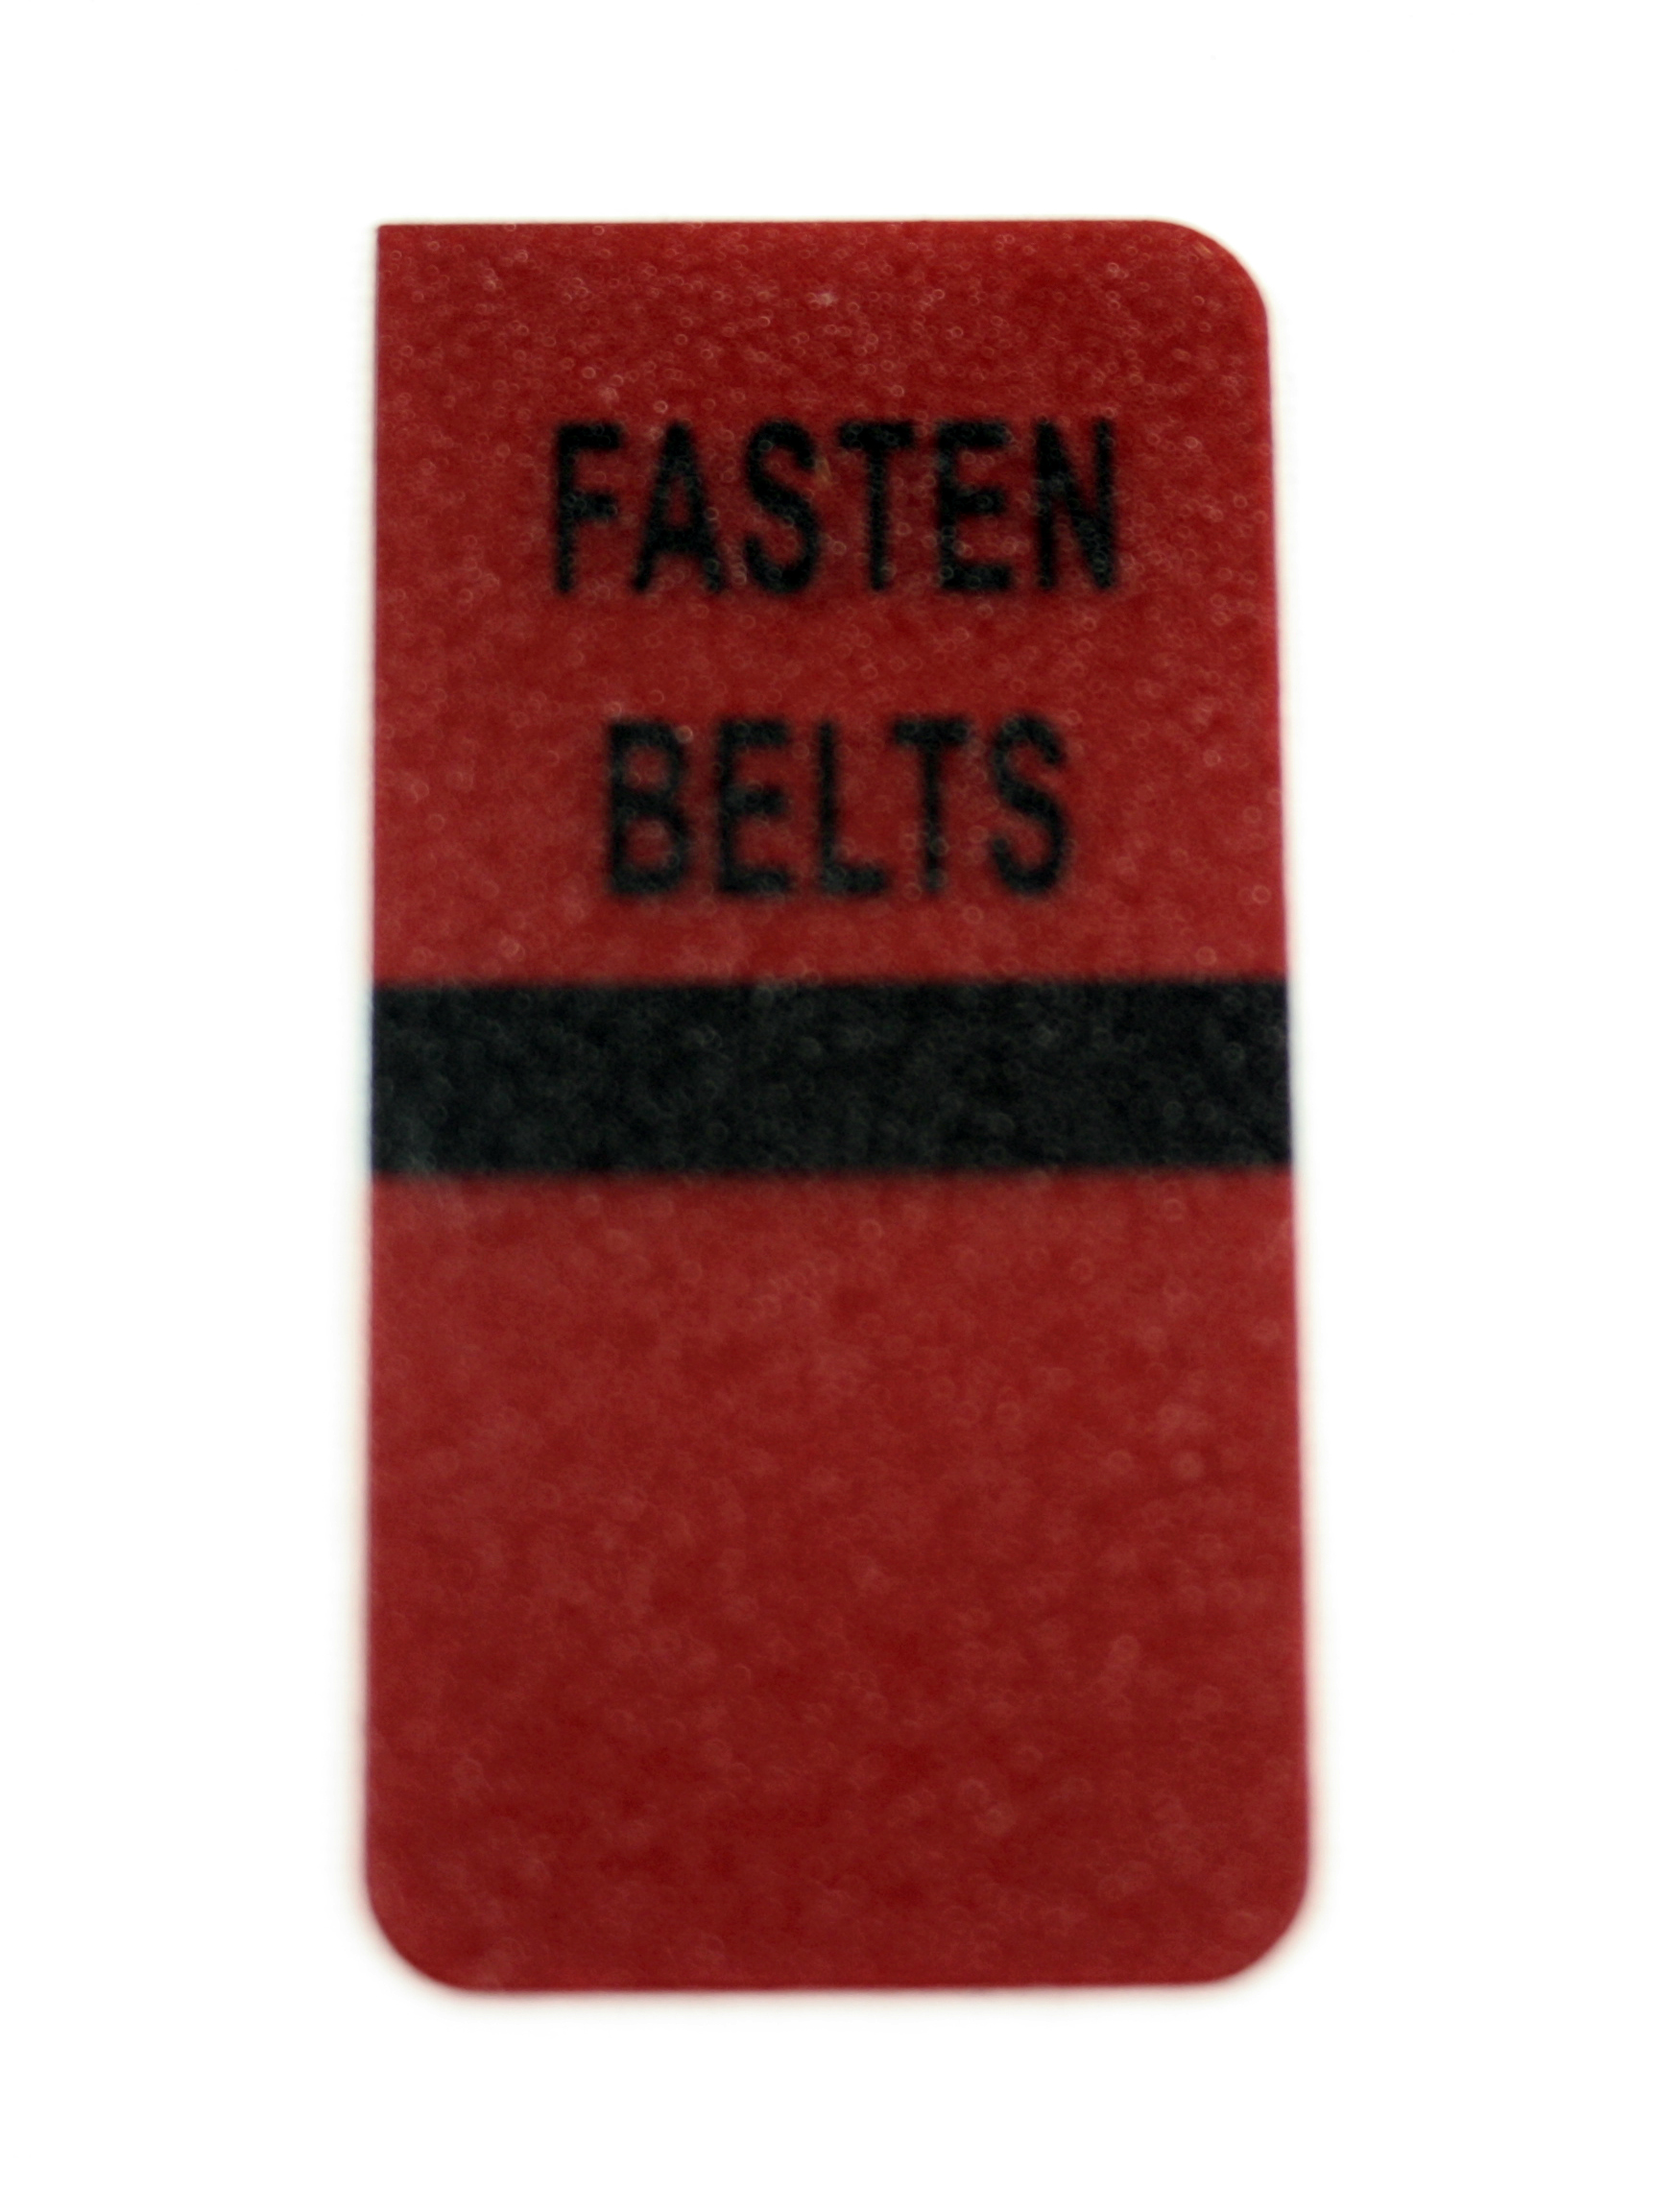 1977-1979 Corvette Fasten Belts Warning Lens